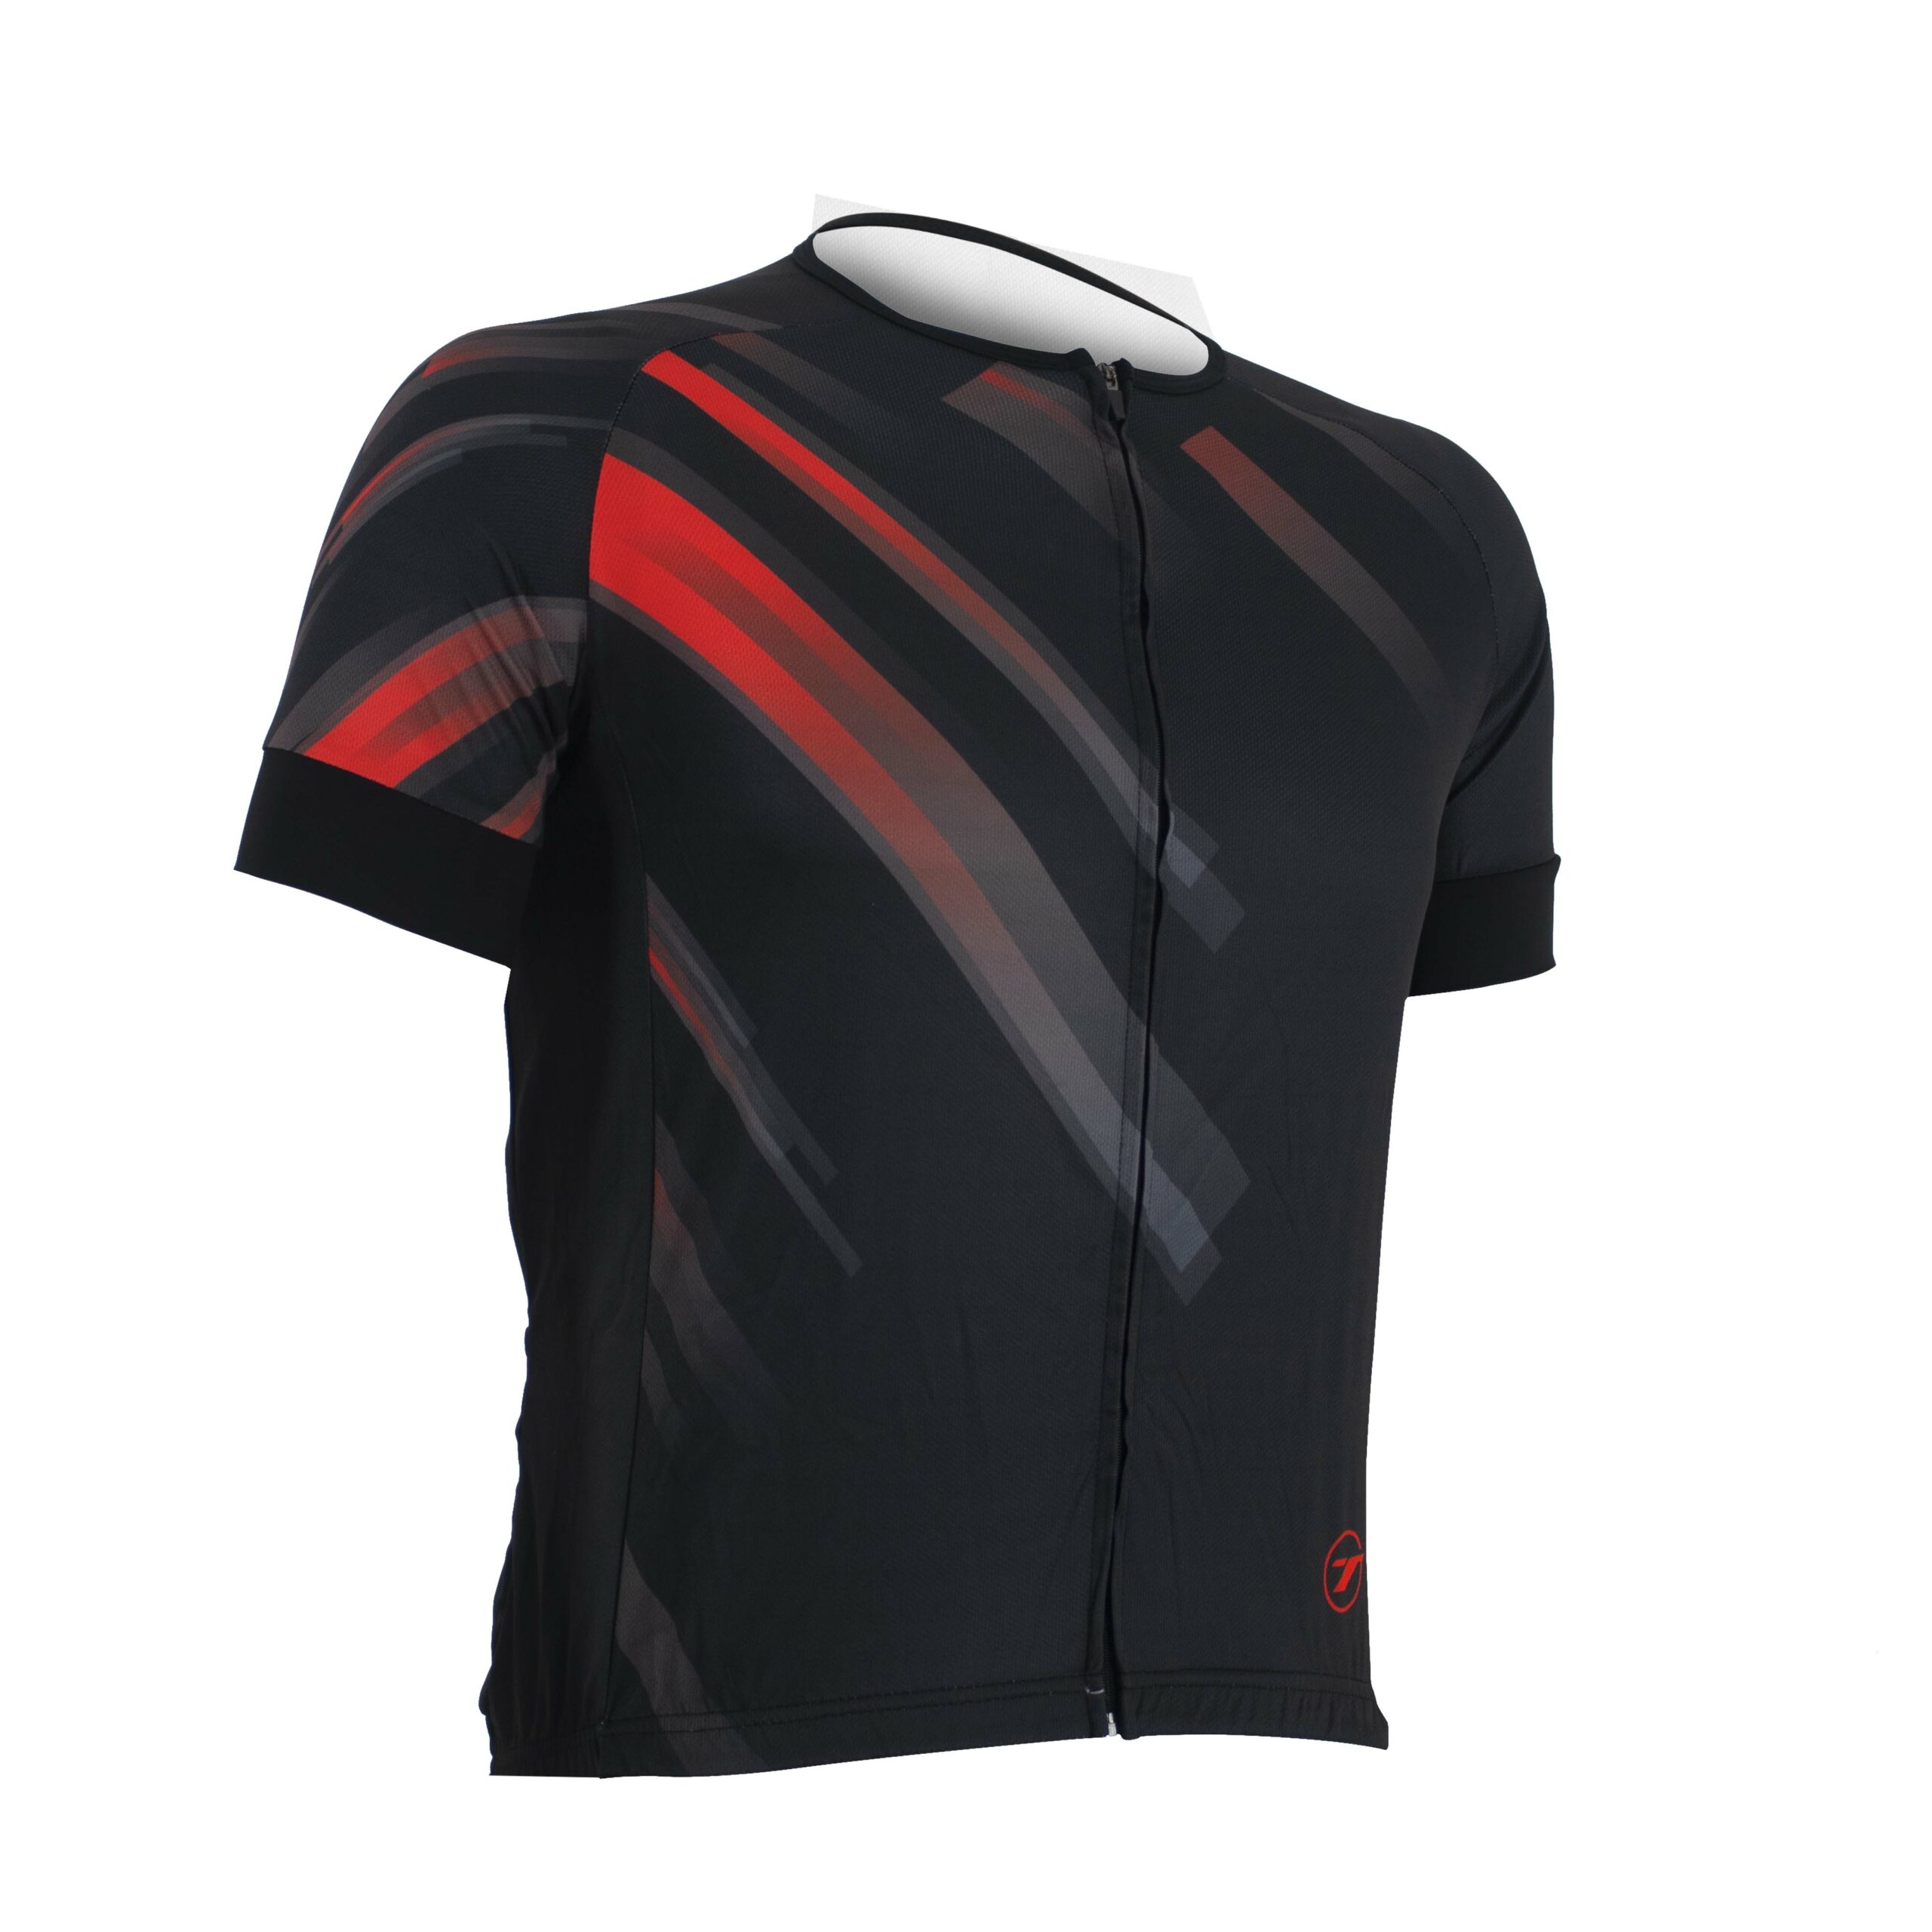 Camisa para ciclismo SUNNY | RIDE LINE - Preto/Vermelho, GG